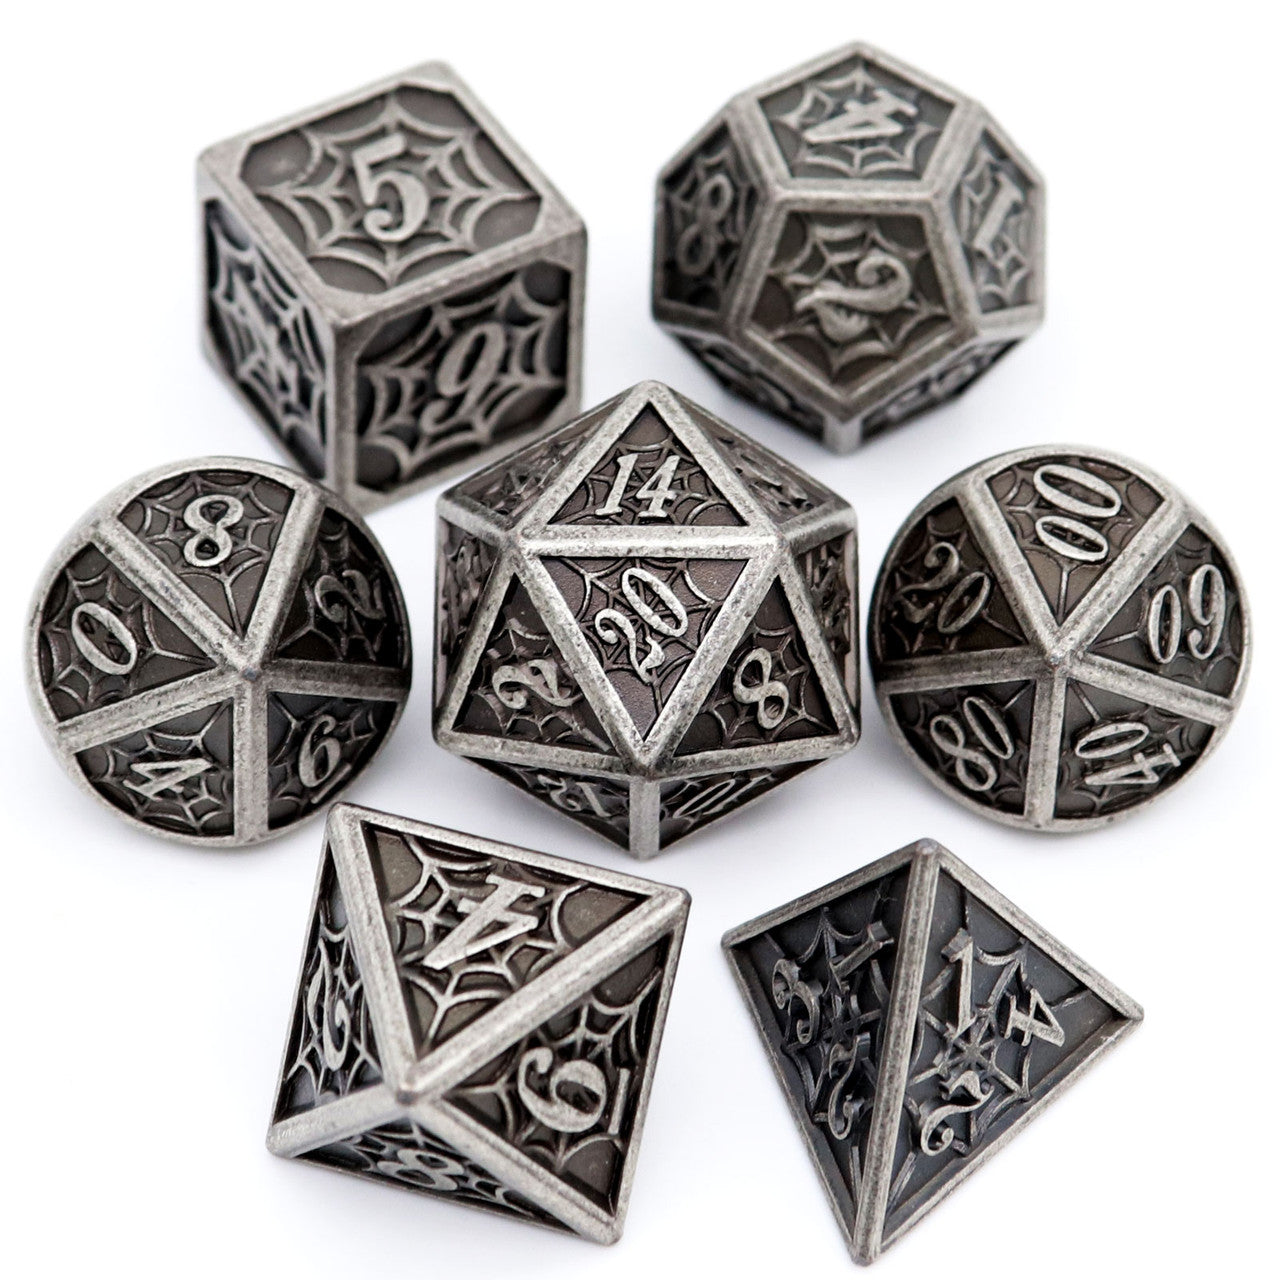 antique metal dice, ancient dice, metal dnd dice, metal dice set